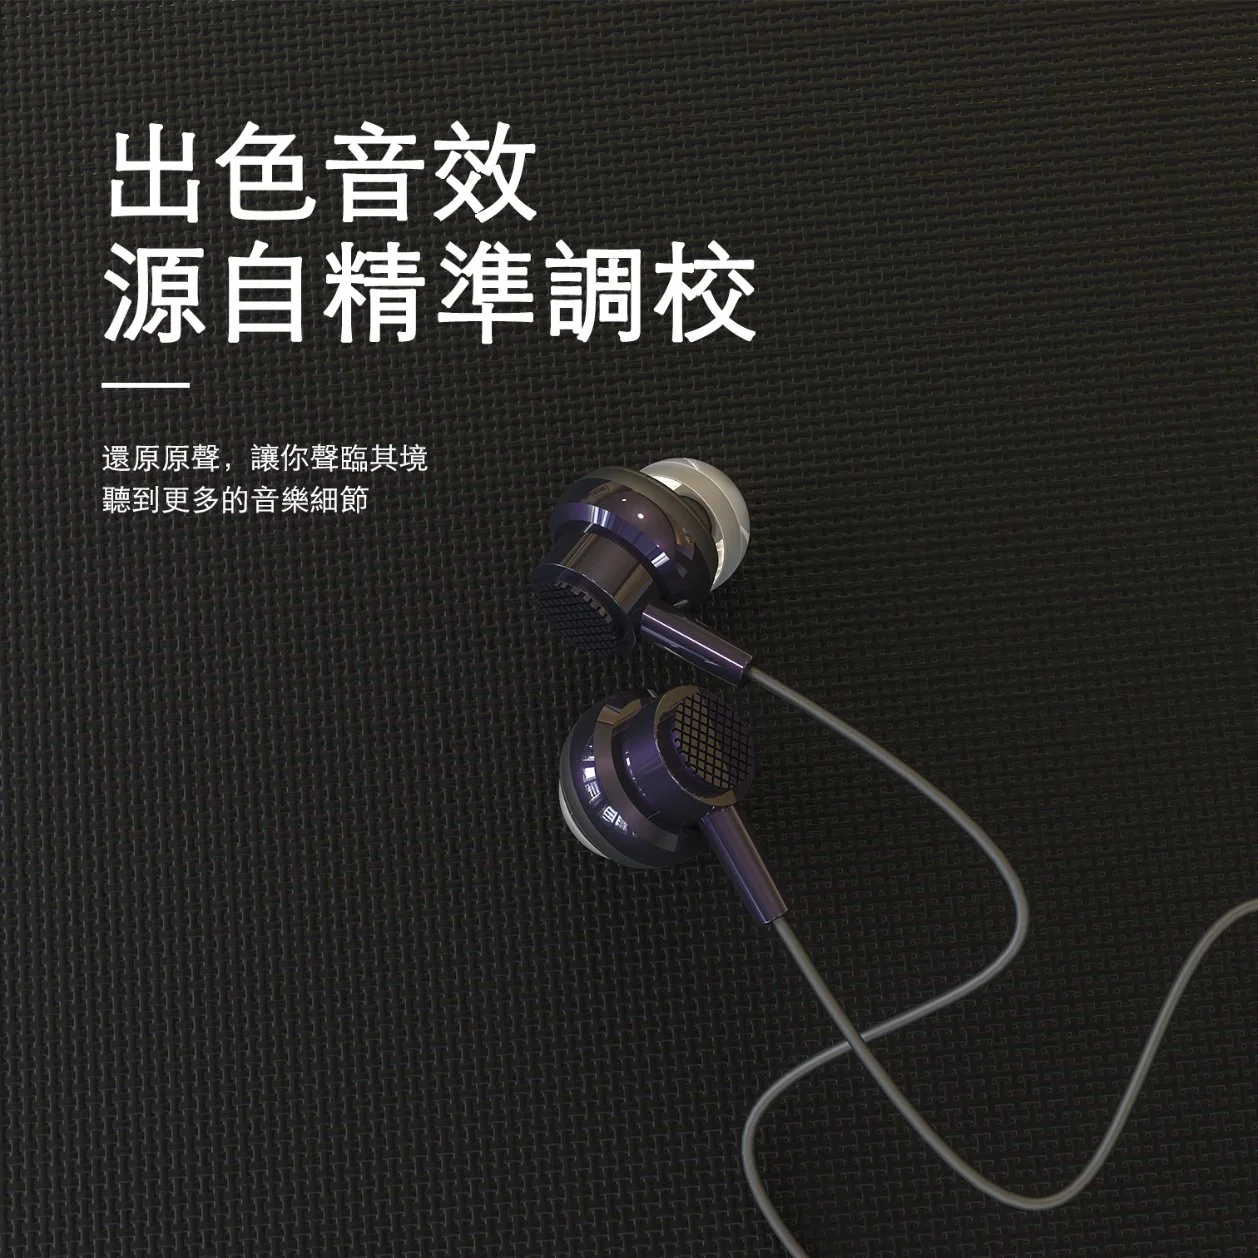 Hot Selling Handy-Zubehör in Ohr-Kopfhörer mit Silikon Weiche Gummi-Ohrstöpsel verletzen die Ohren nicht mit langer Zeit Geräuschreduzierung Einstellbare Lautstärke